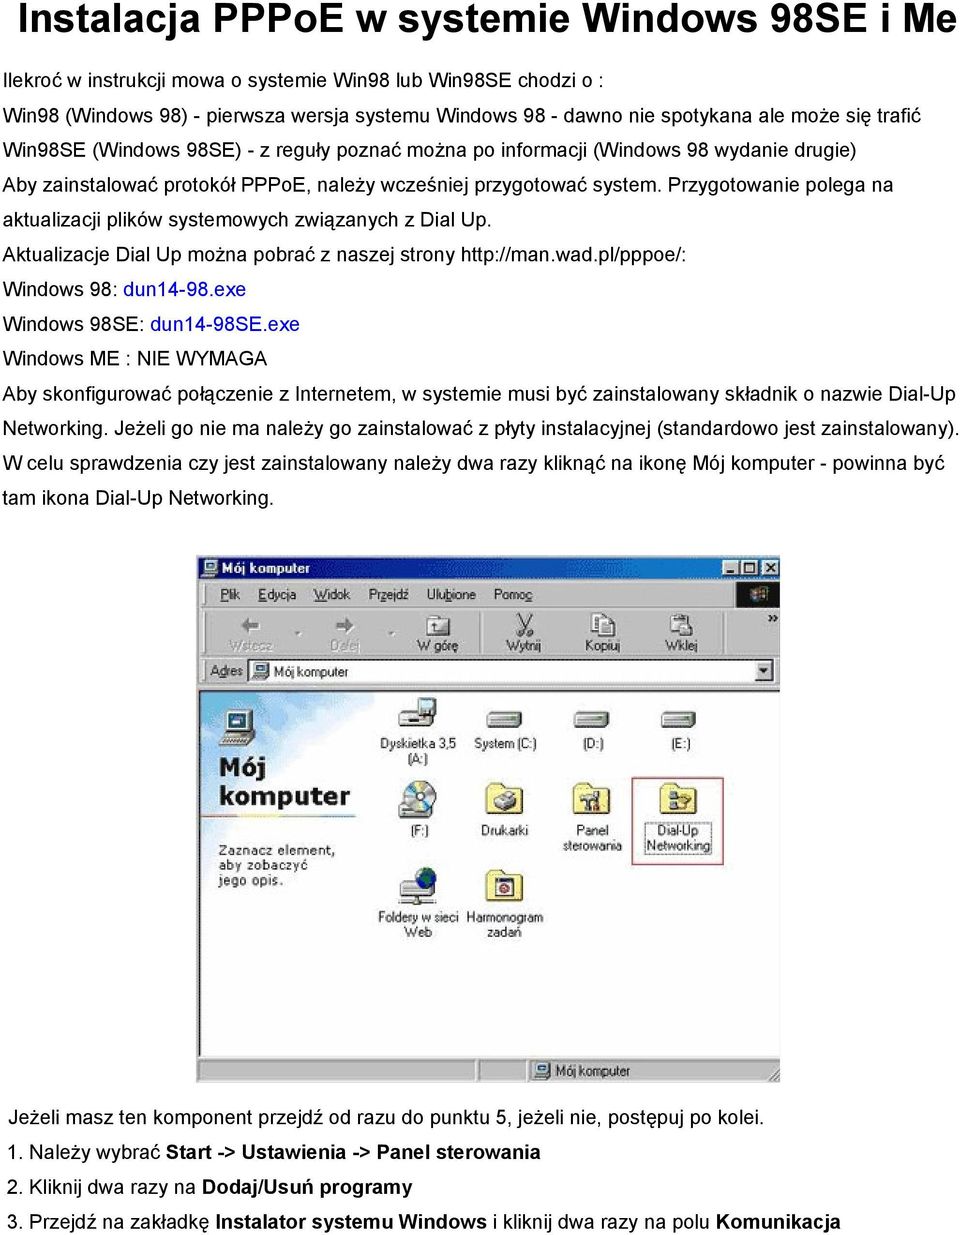 Przygotowanie polega na aktualizacji plików systemowych związanych z Dial Up. Aktualizacje Dial Up można pobrać z naszej strony http://man.wad.pl/pppoe/: Windows 98: dun14-98.